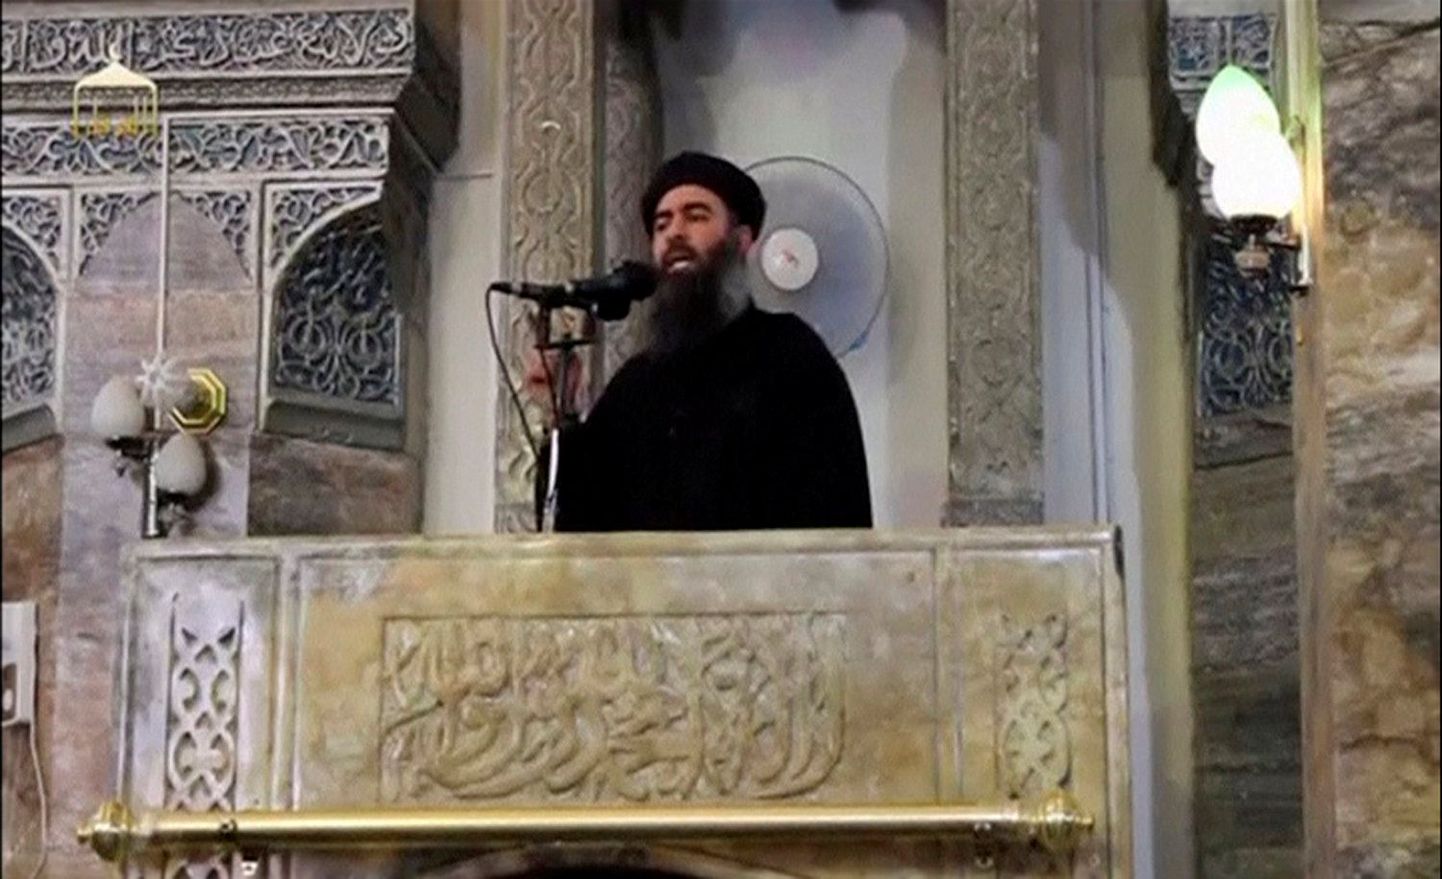 Islamiriigi liider Abu Bakr al-Baghdadi  2014. aastal internetti postitatud videos Mosulis kõnet pidamas.